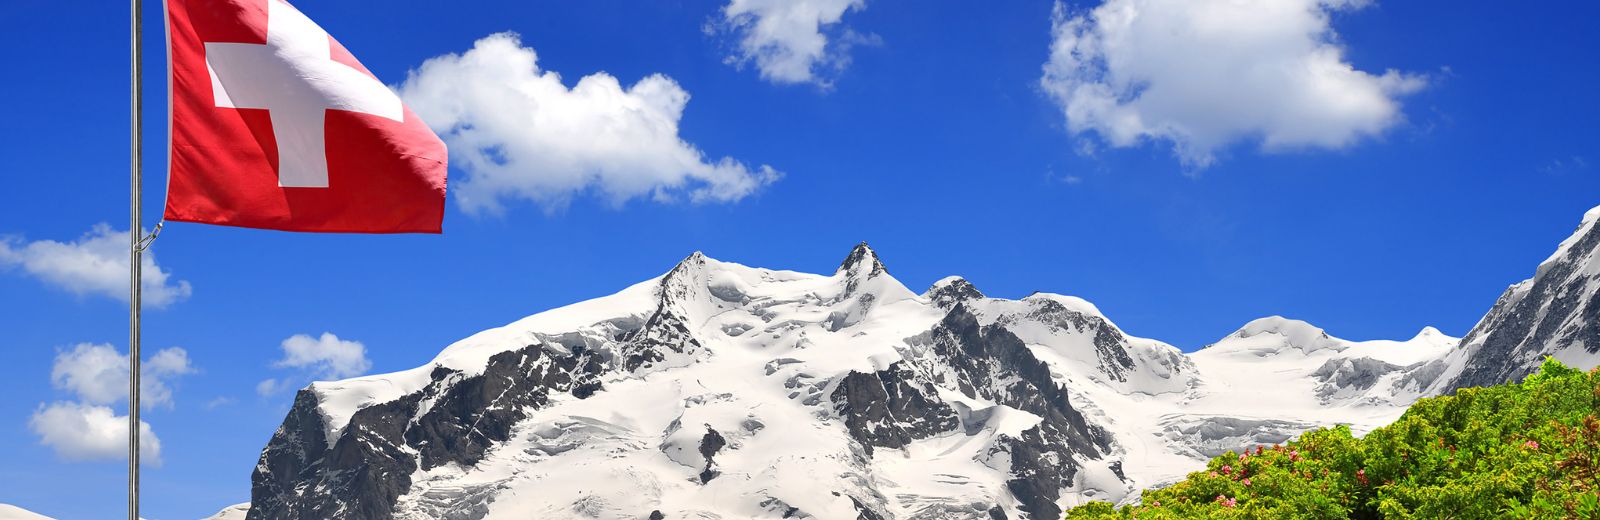 bandeira suiça com montanha de neve ao fundo